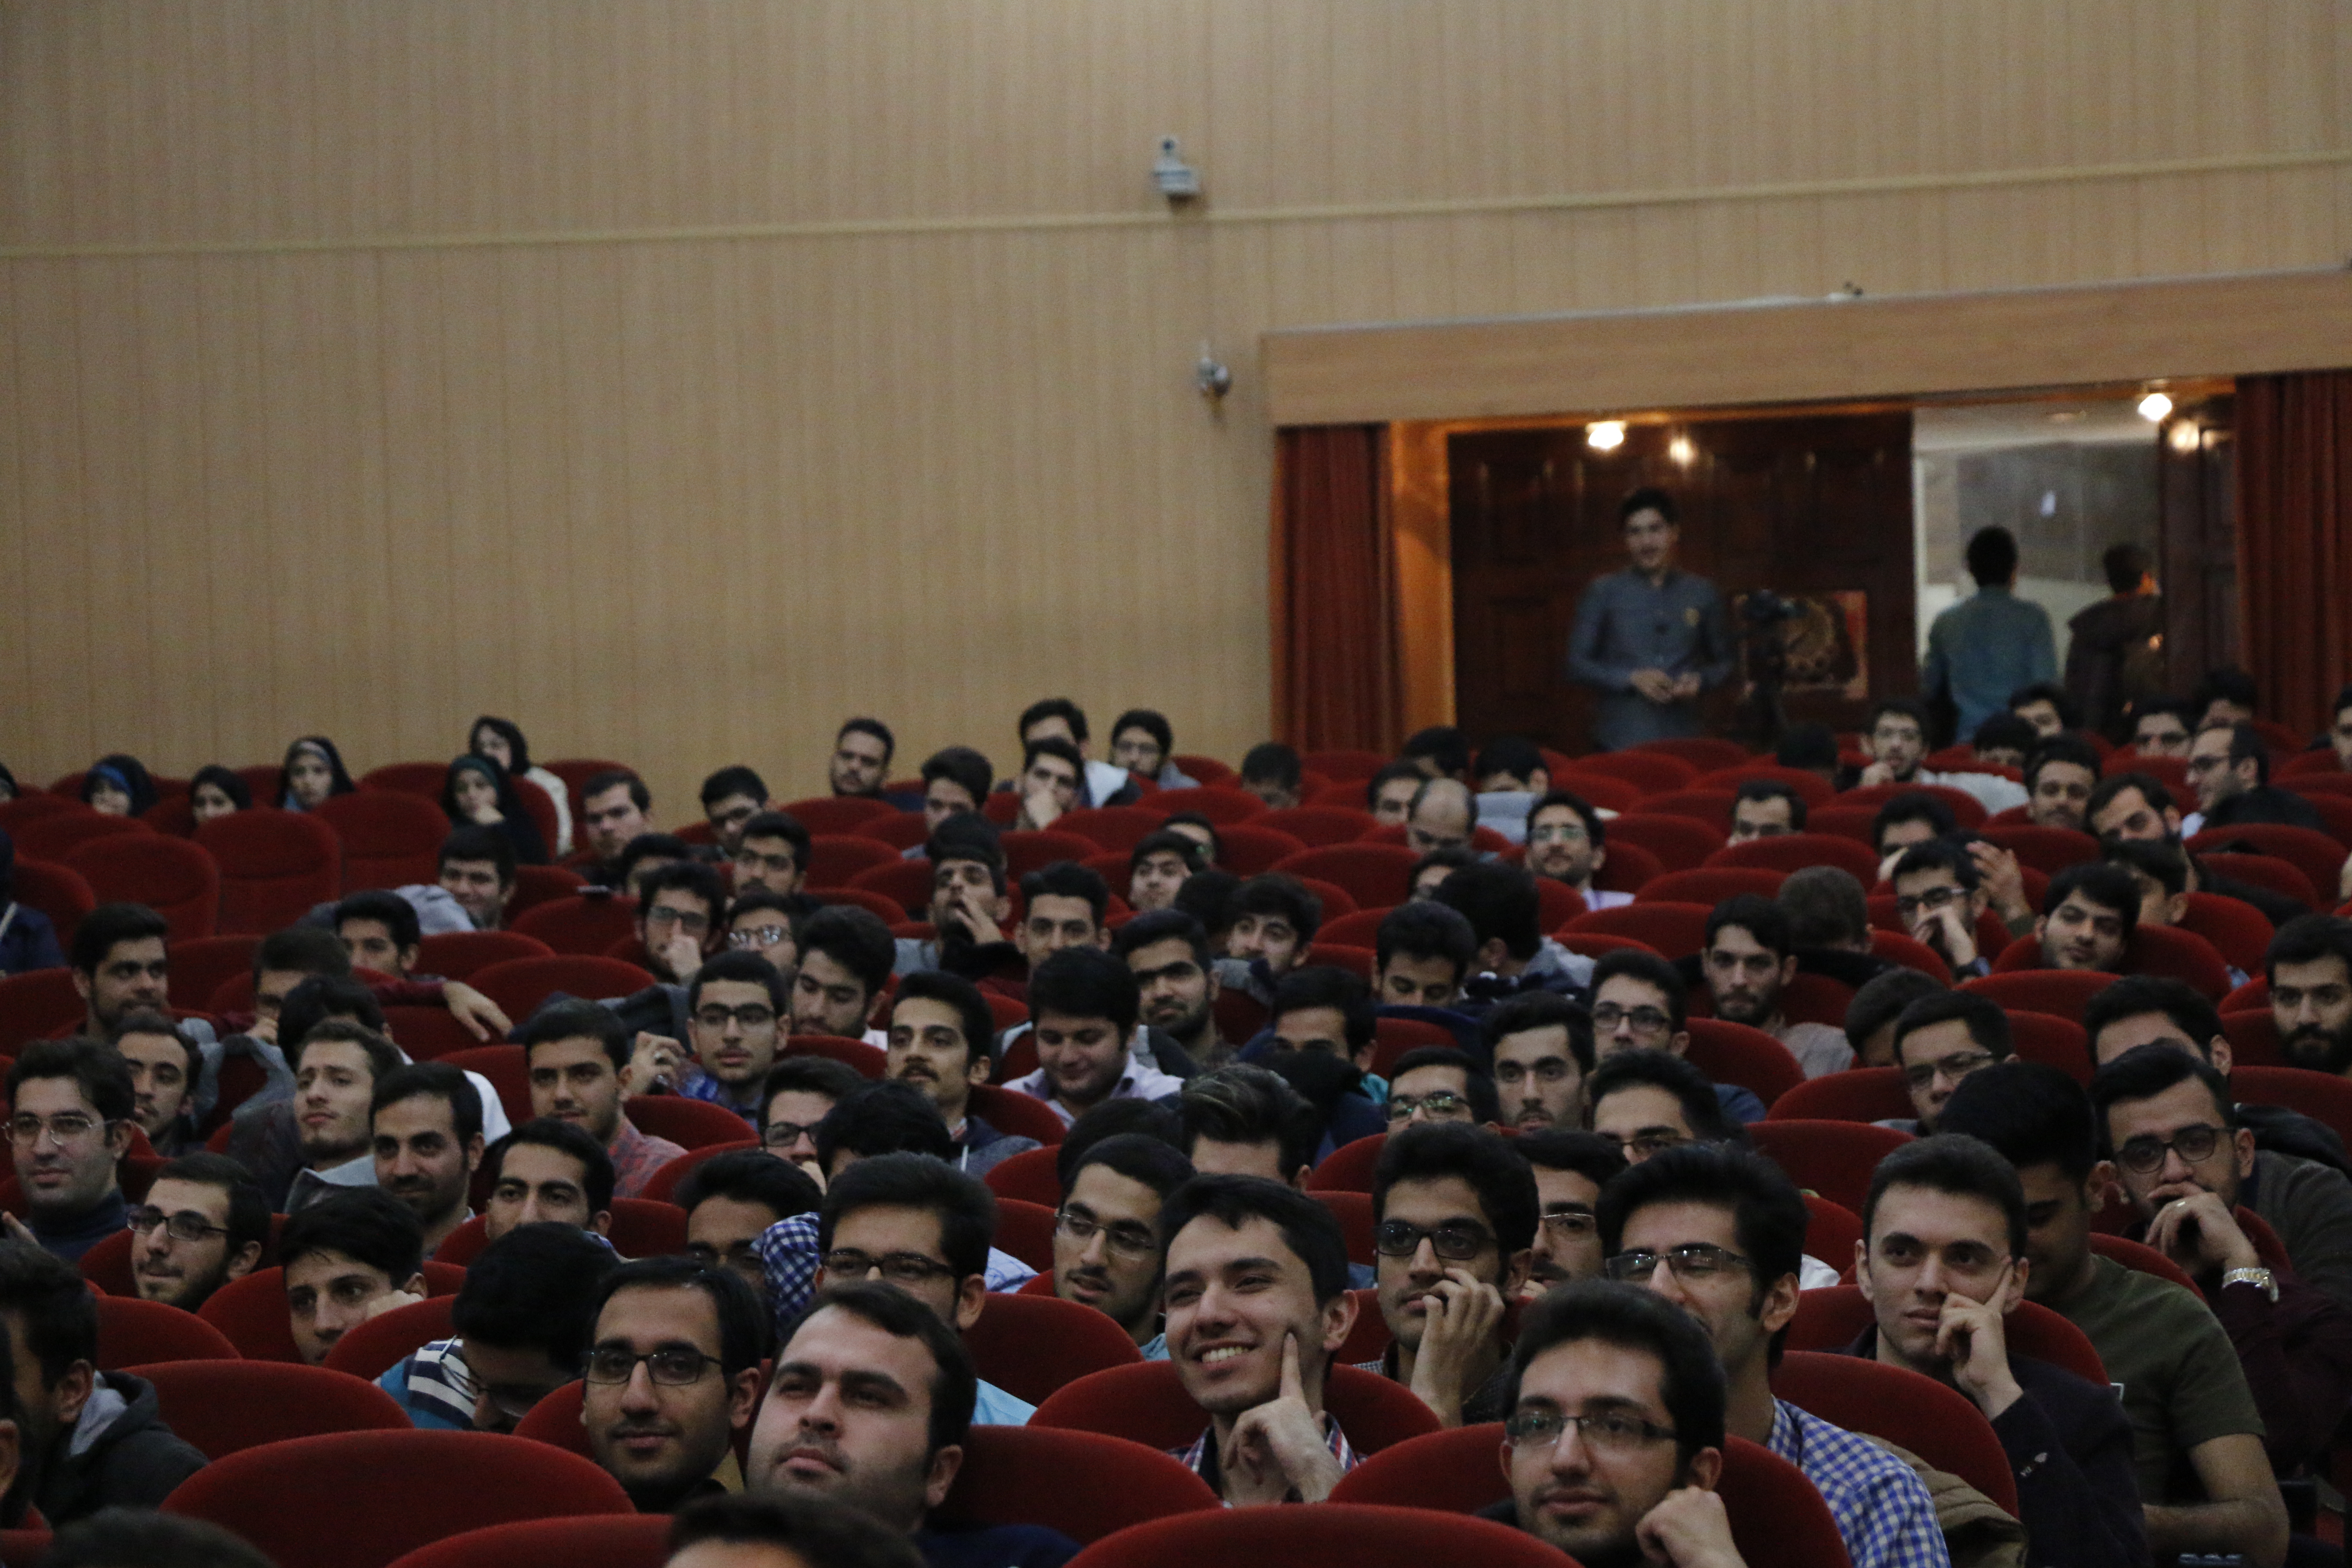 جلسه اول رسم انتخاب 97- 12 آذر97 - کانون مهر زندگی جهاد دانشگاهی امیرکبیر